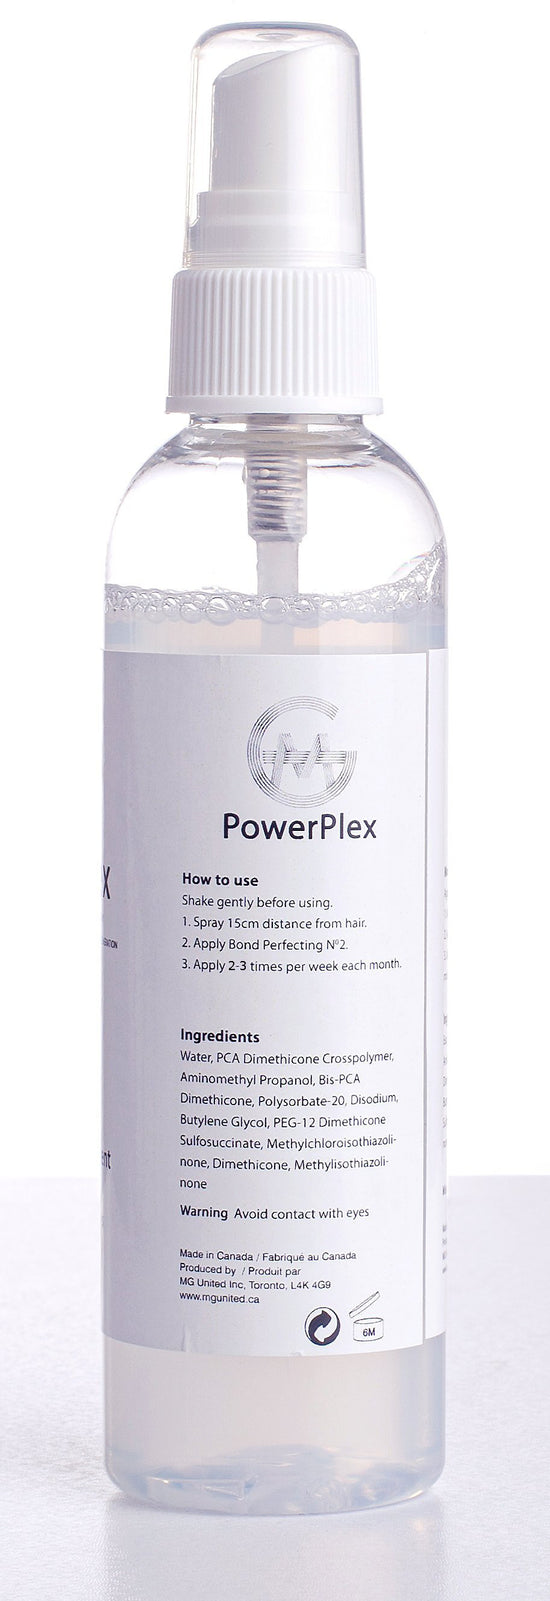 PowerPlex N3 back by MG United